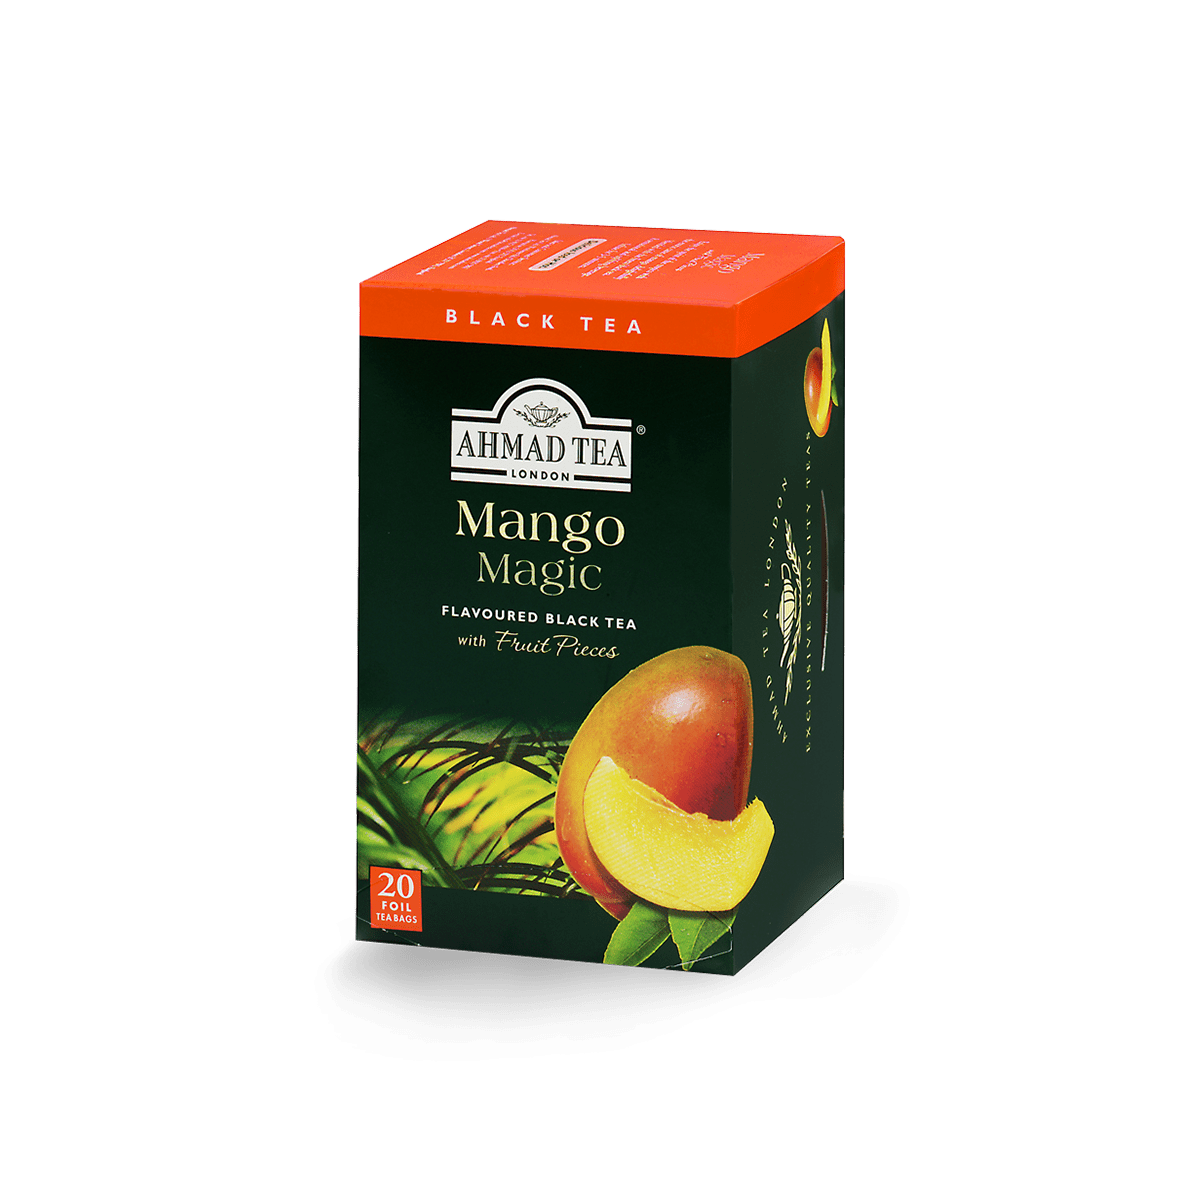 Ahmad Tea's Mango Magic Flavored Black Tea Bags - 20 count